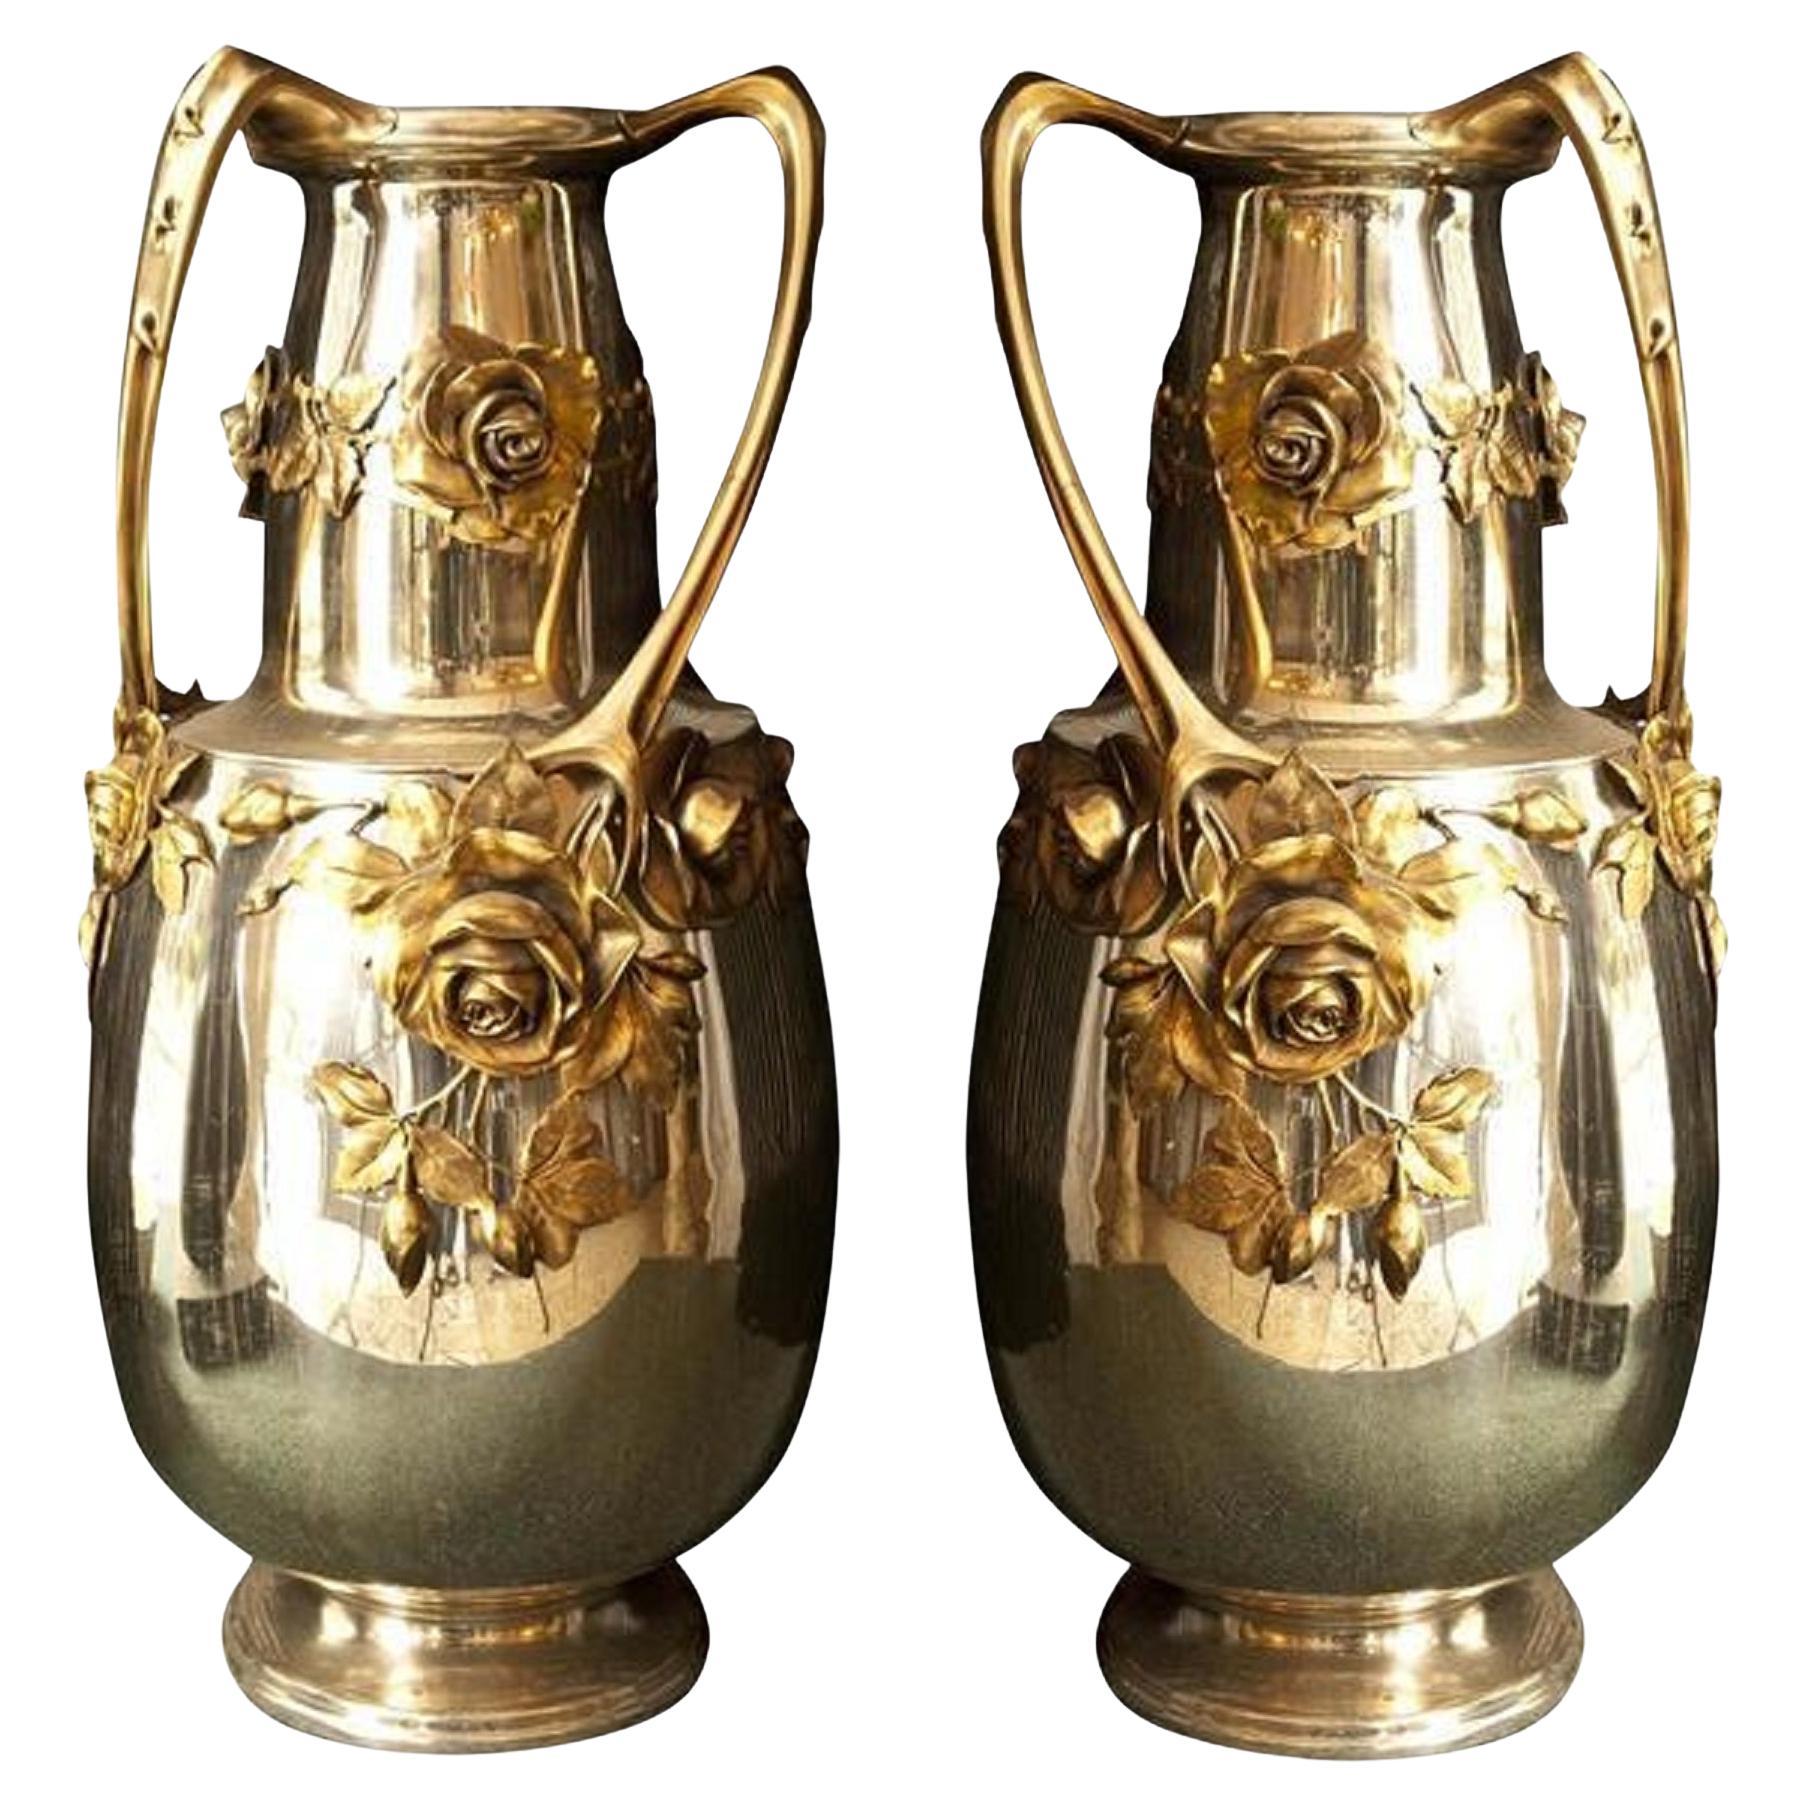 2 Amaizing Vases Kayser, 'German', 1900, Style: Jugendstil, Art Nouveau, Liberty For Sale